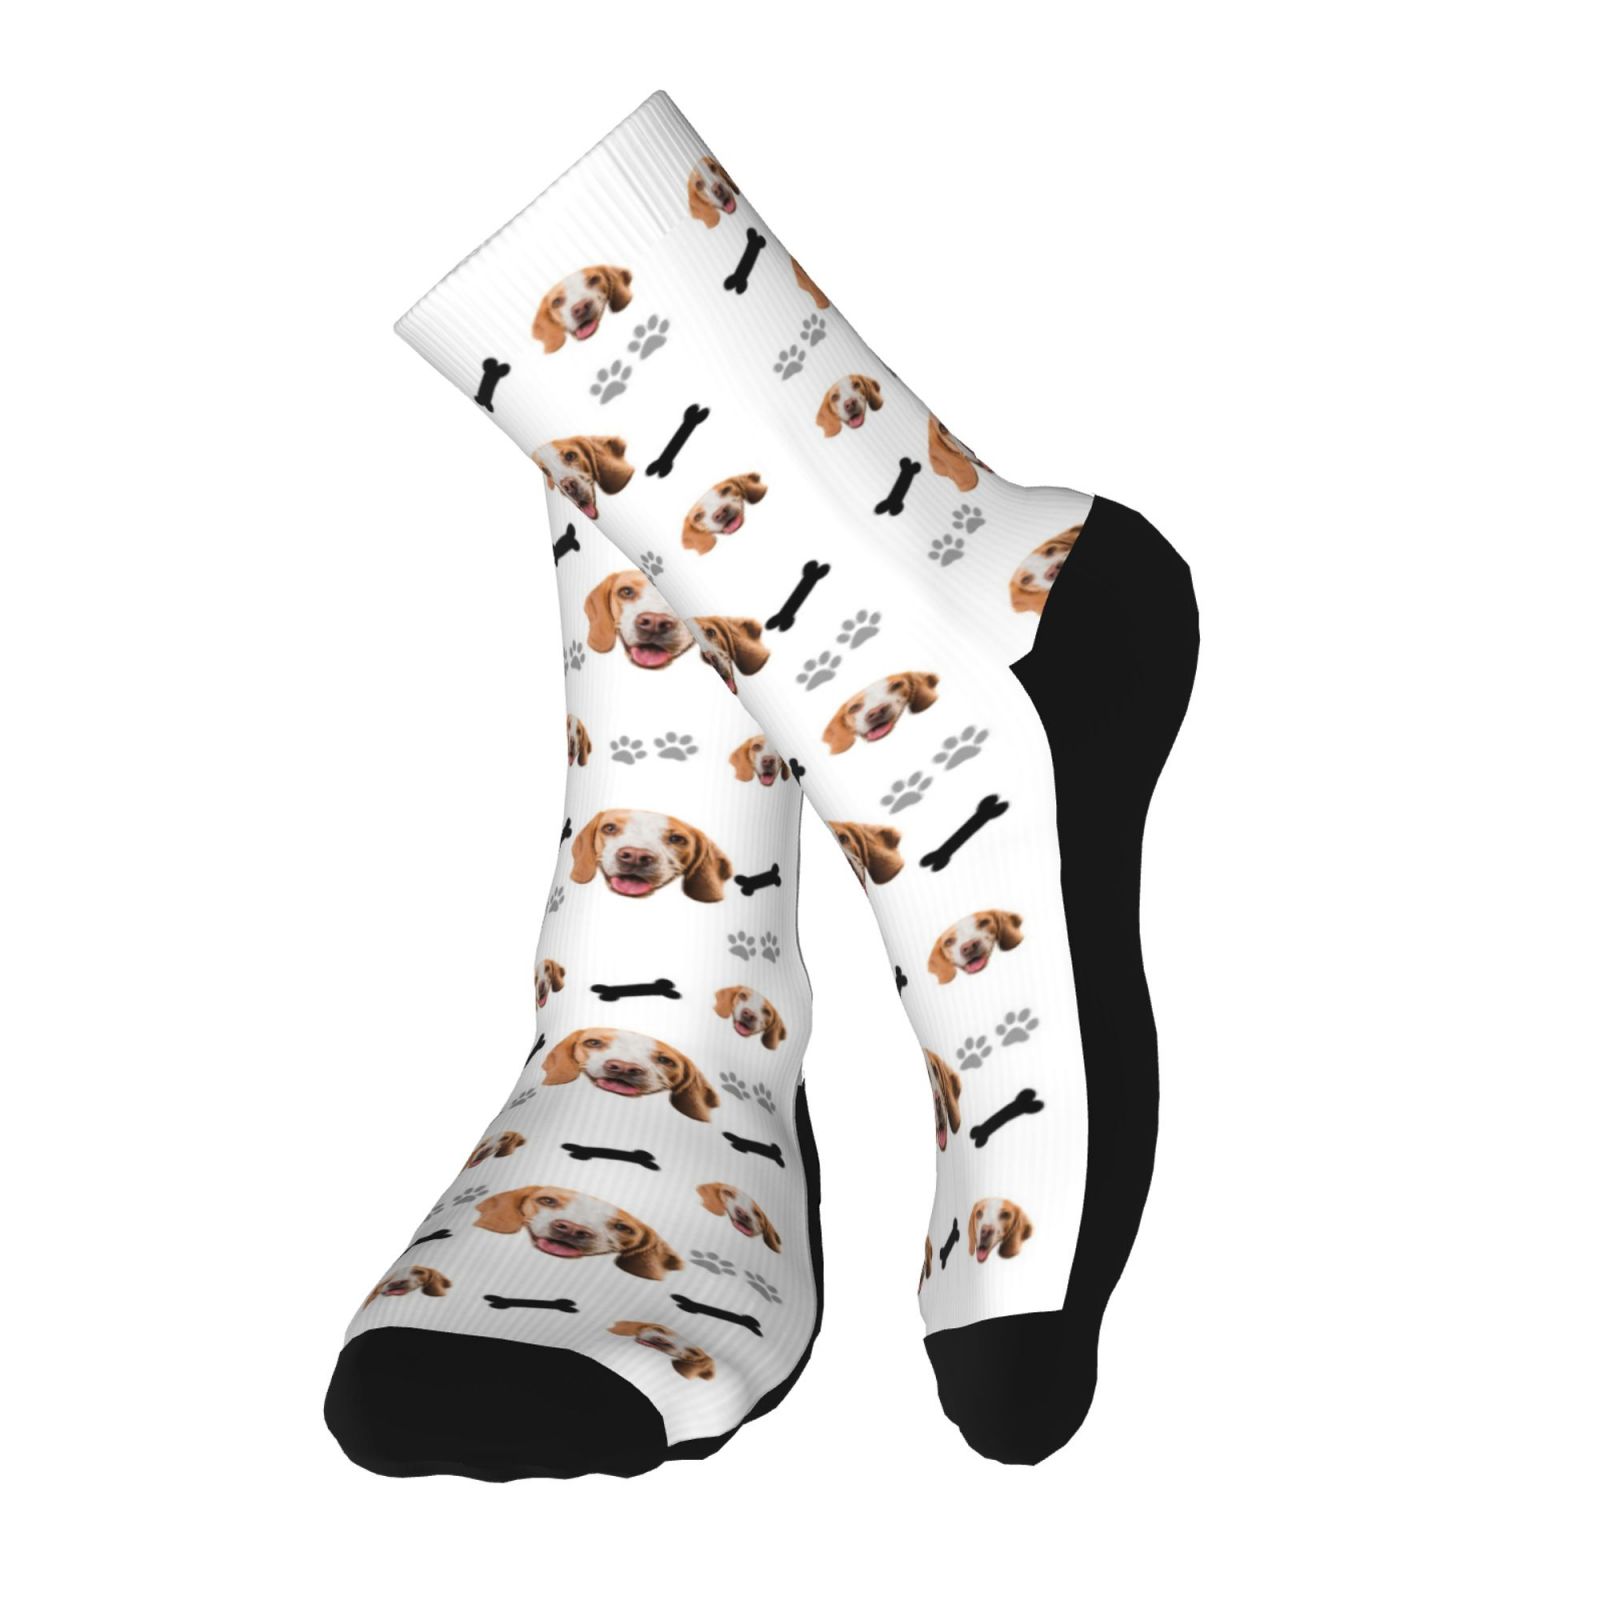 Custom Face Socks for Men and Women, Dog Paws and Bones Animal Face Socks